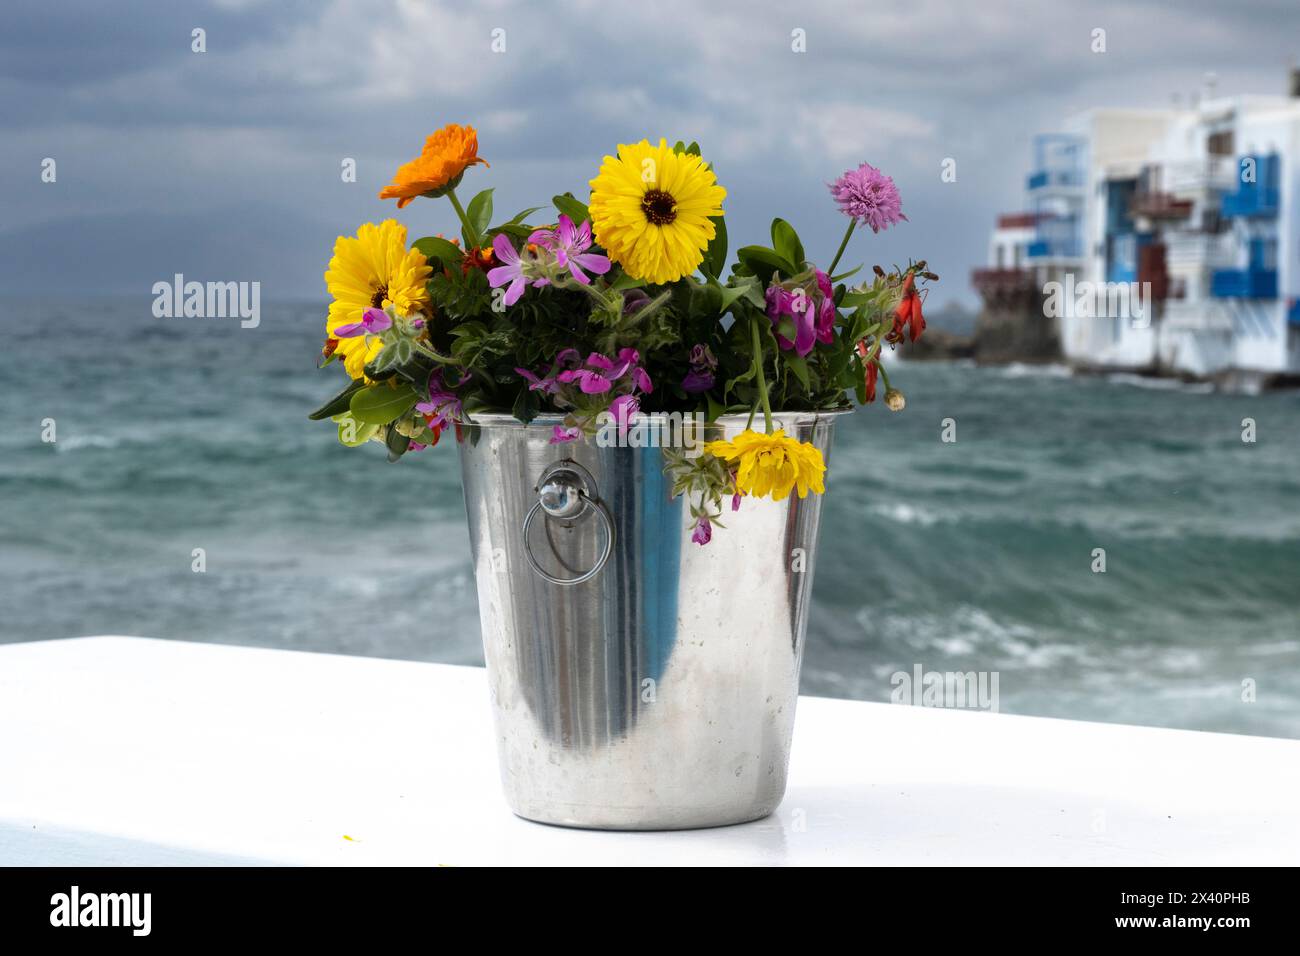 Seau de fleurs coupées sur un mur blanchi à la chaux avec logement en bord de mer en arrière-plan sur l'île de Mykonos en Grèce ; Mykonos, Grèce Banque D'Images